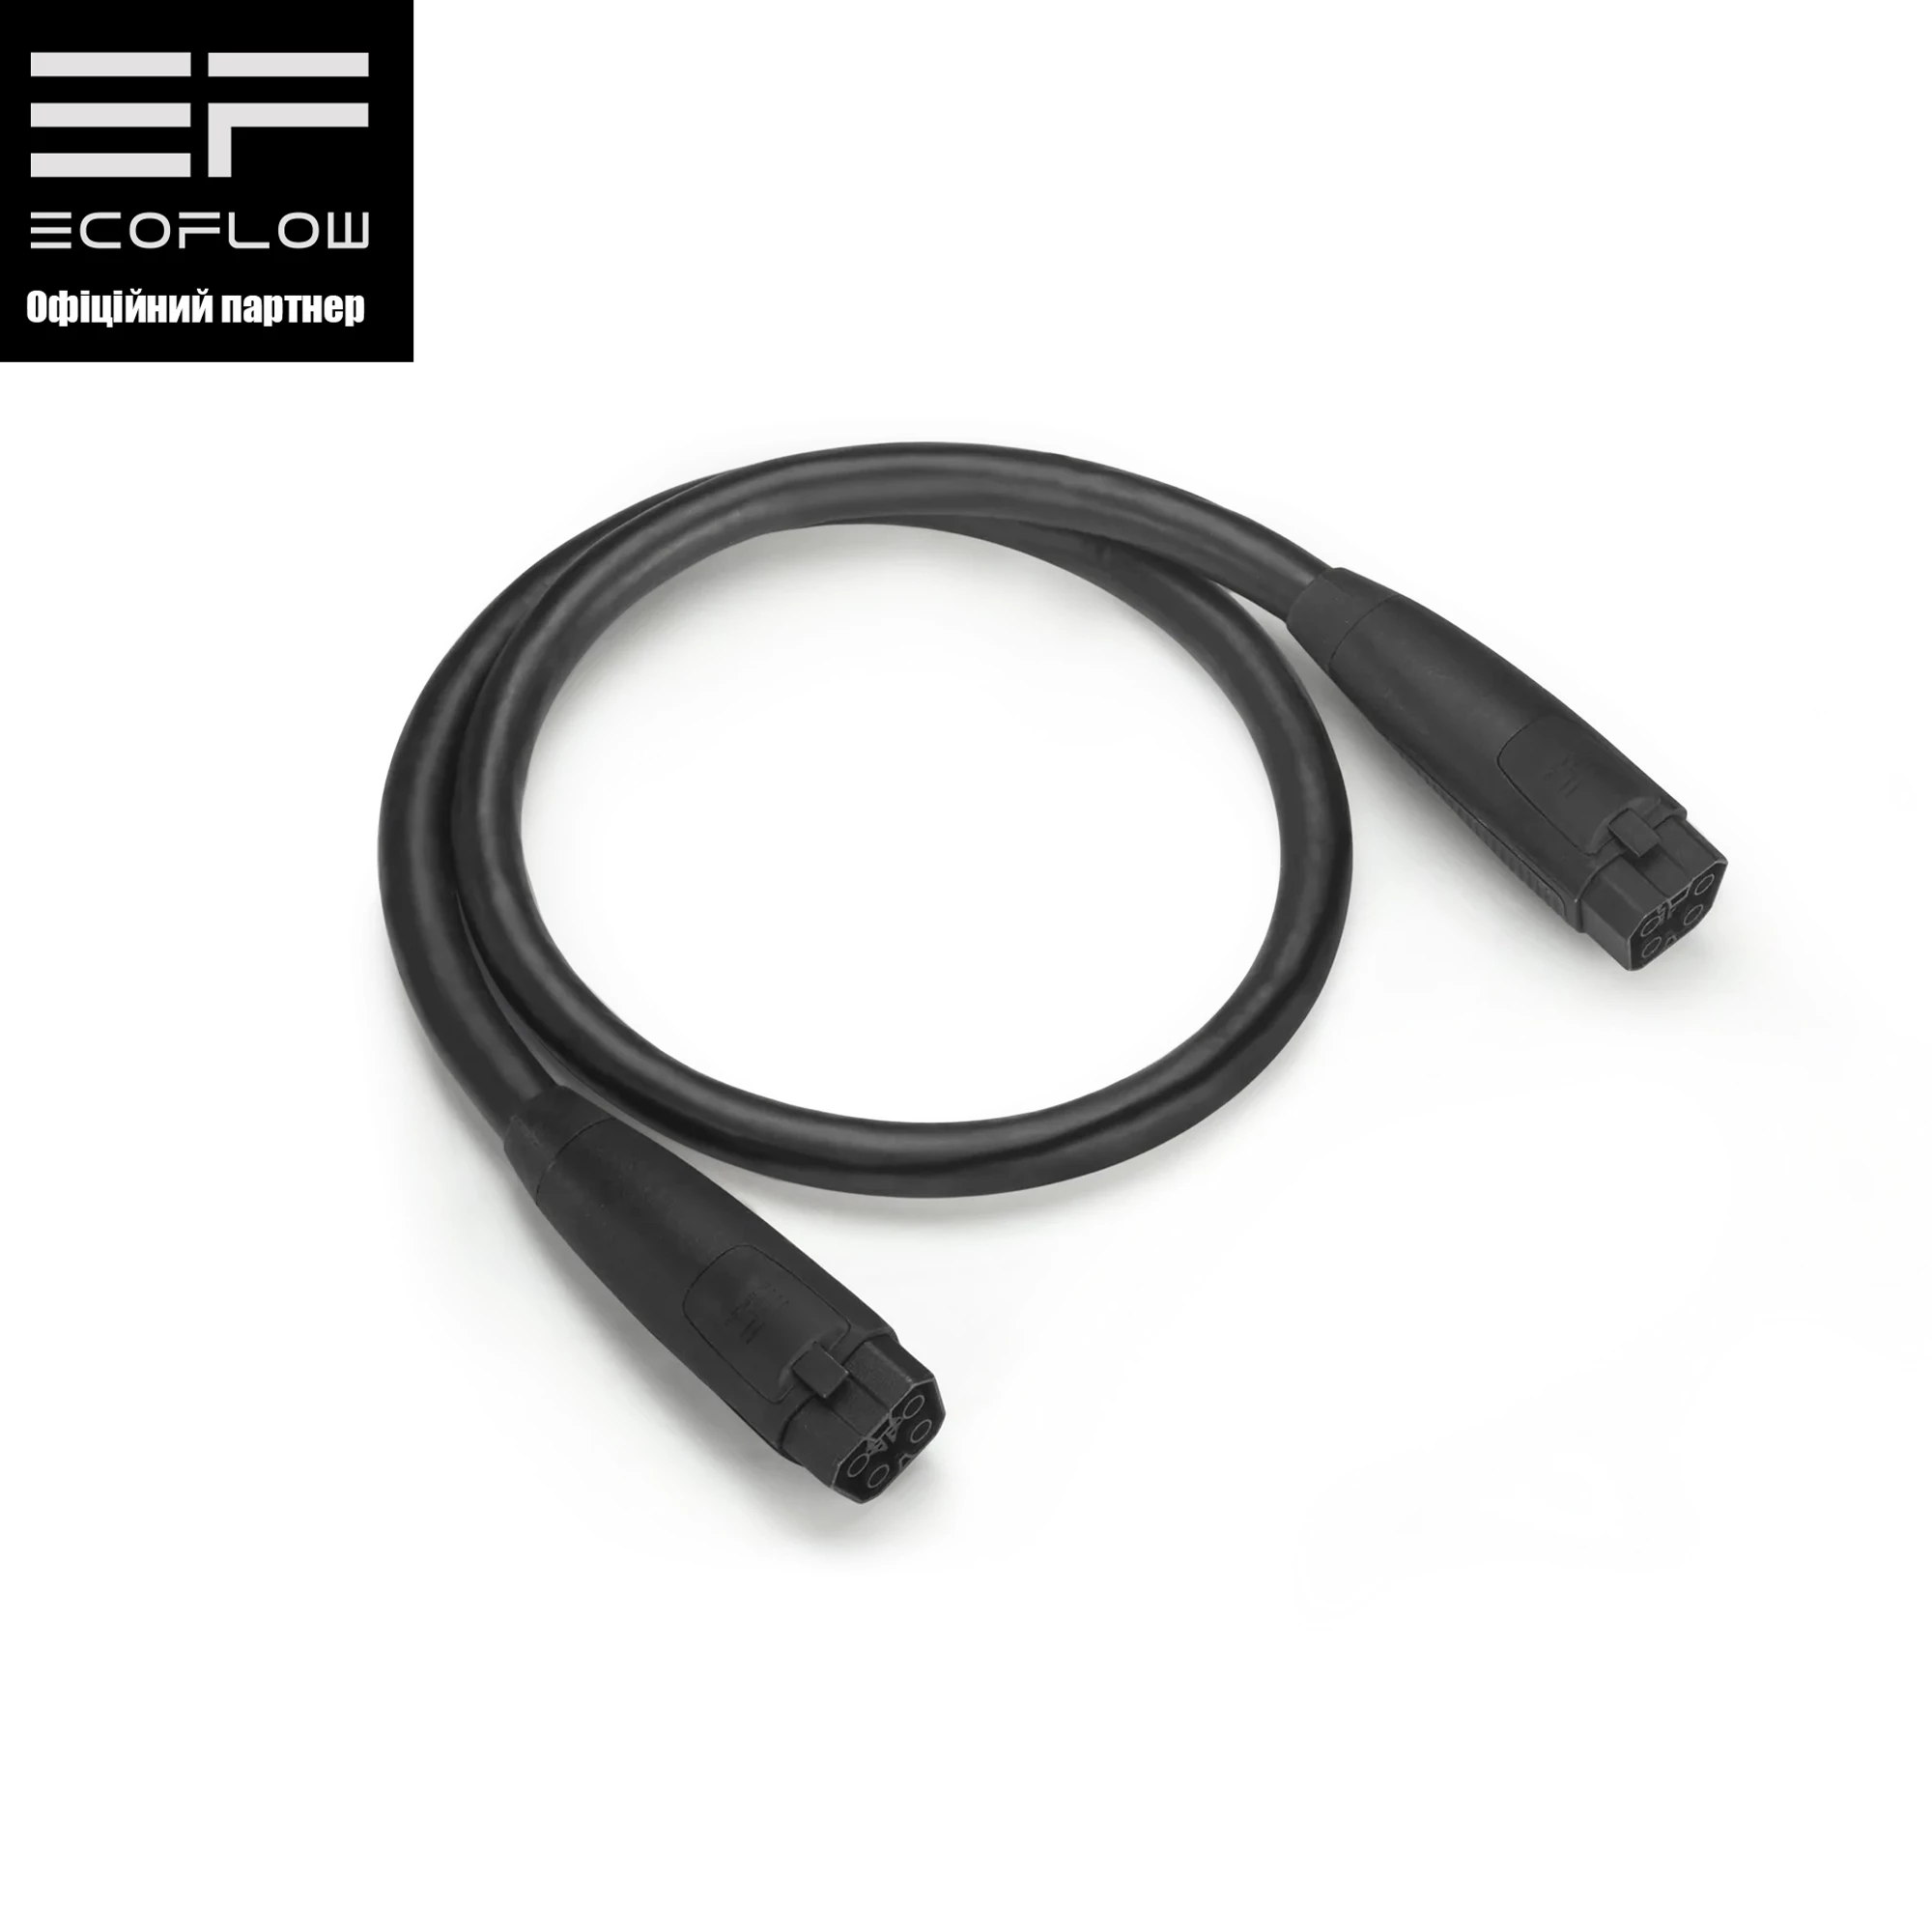 Кабель EcoFlow DELTA Pro-4-8 Double handle connection 0.75m (L48DH-0.75m)